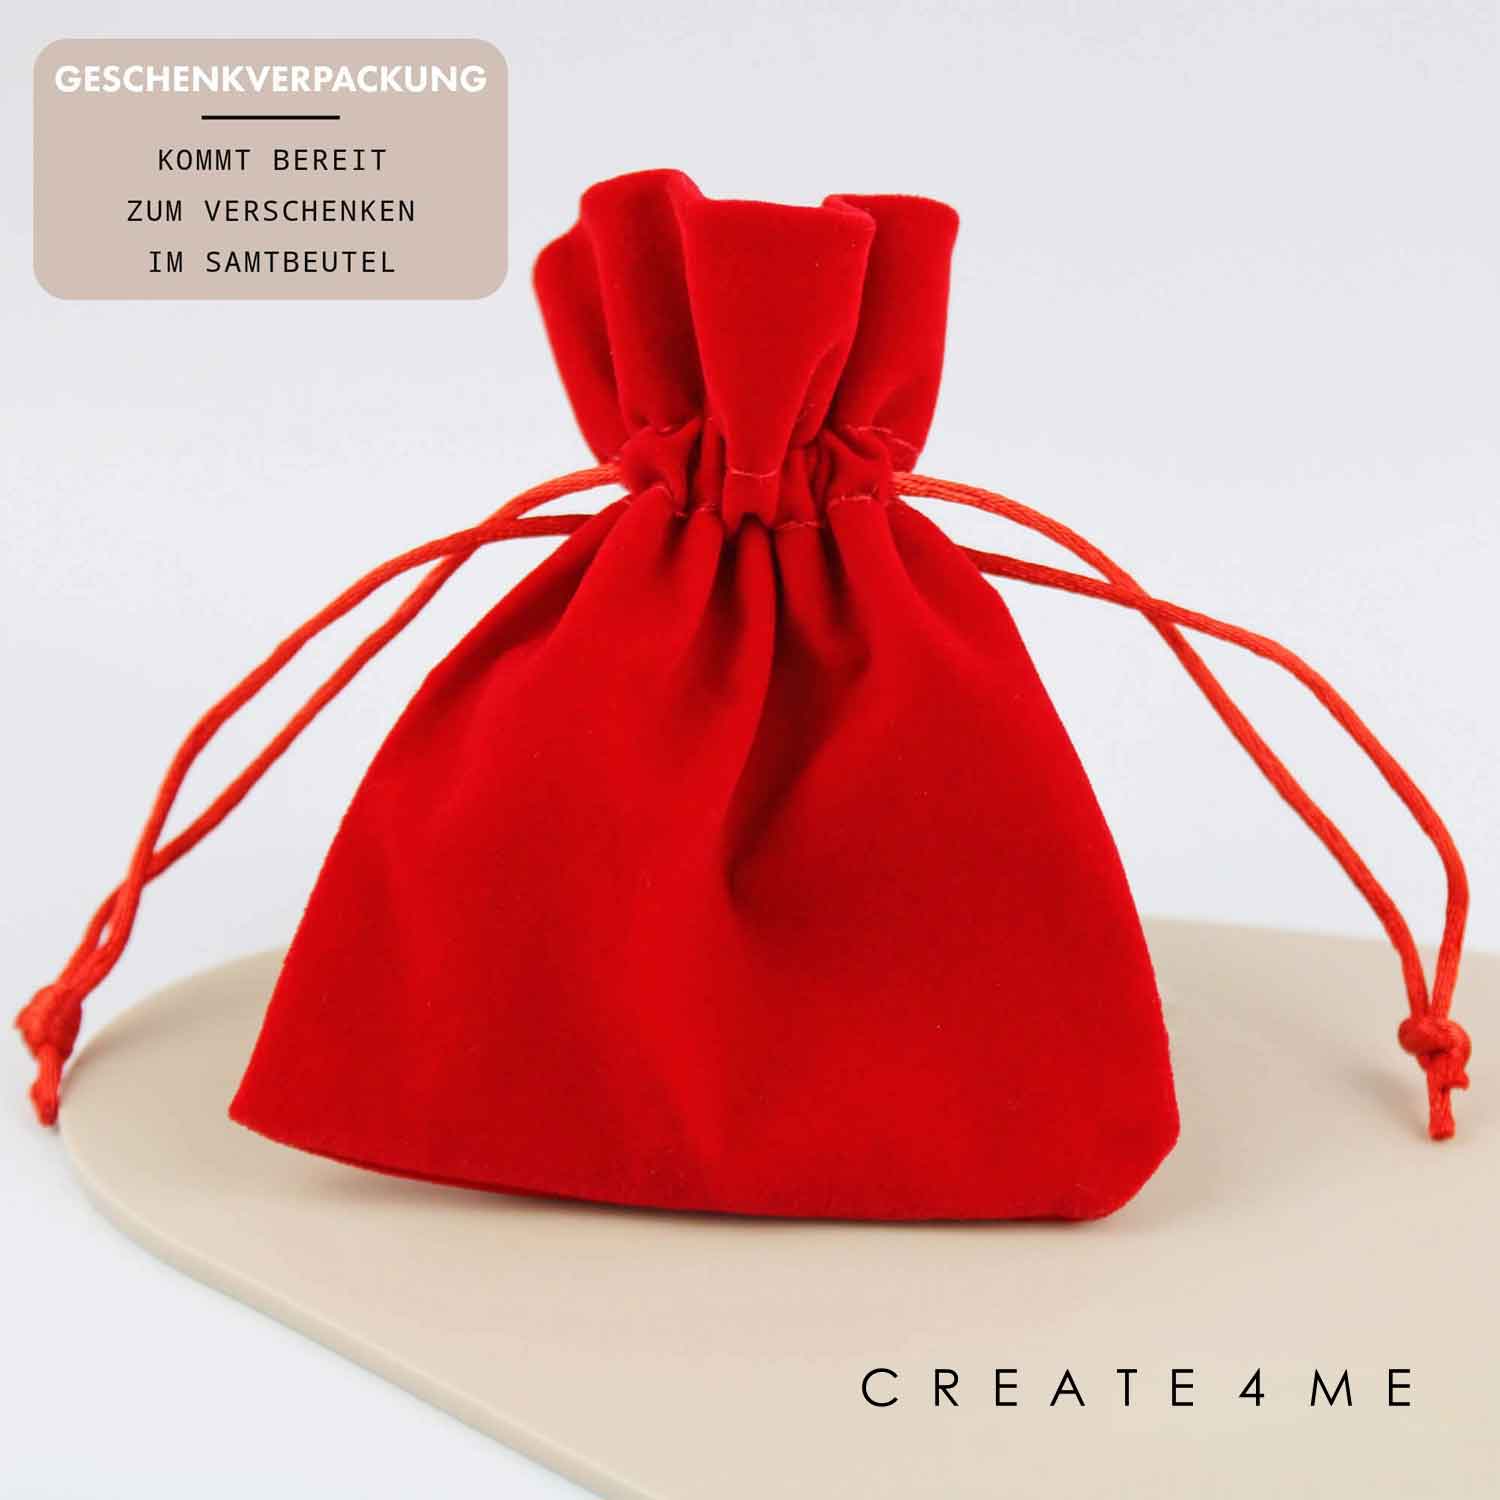 Geschenkverpackung Schlüsselanhänger mit Gravur "Oma du bist wunderbar" und Namen - Create4me